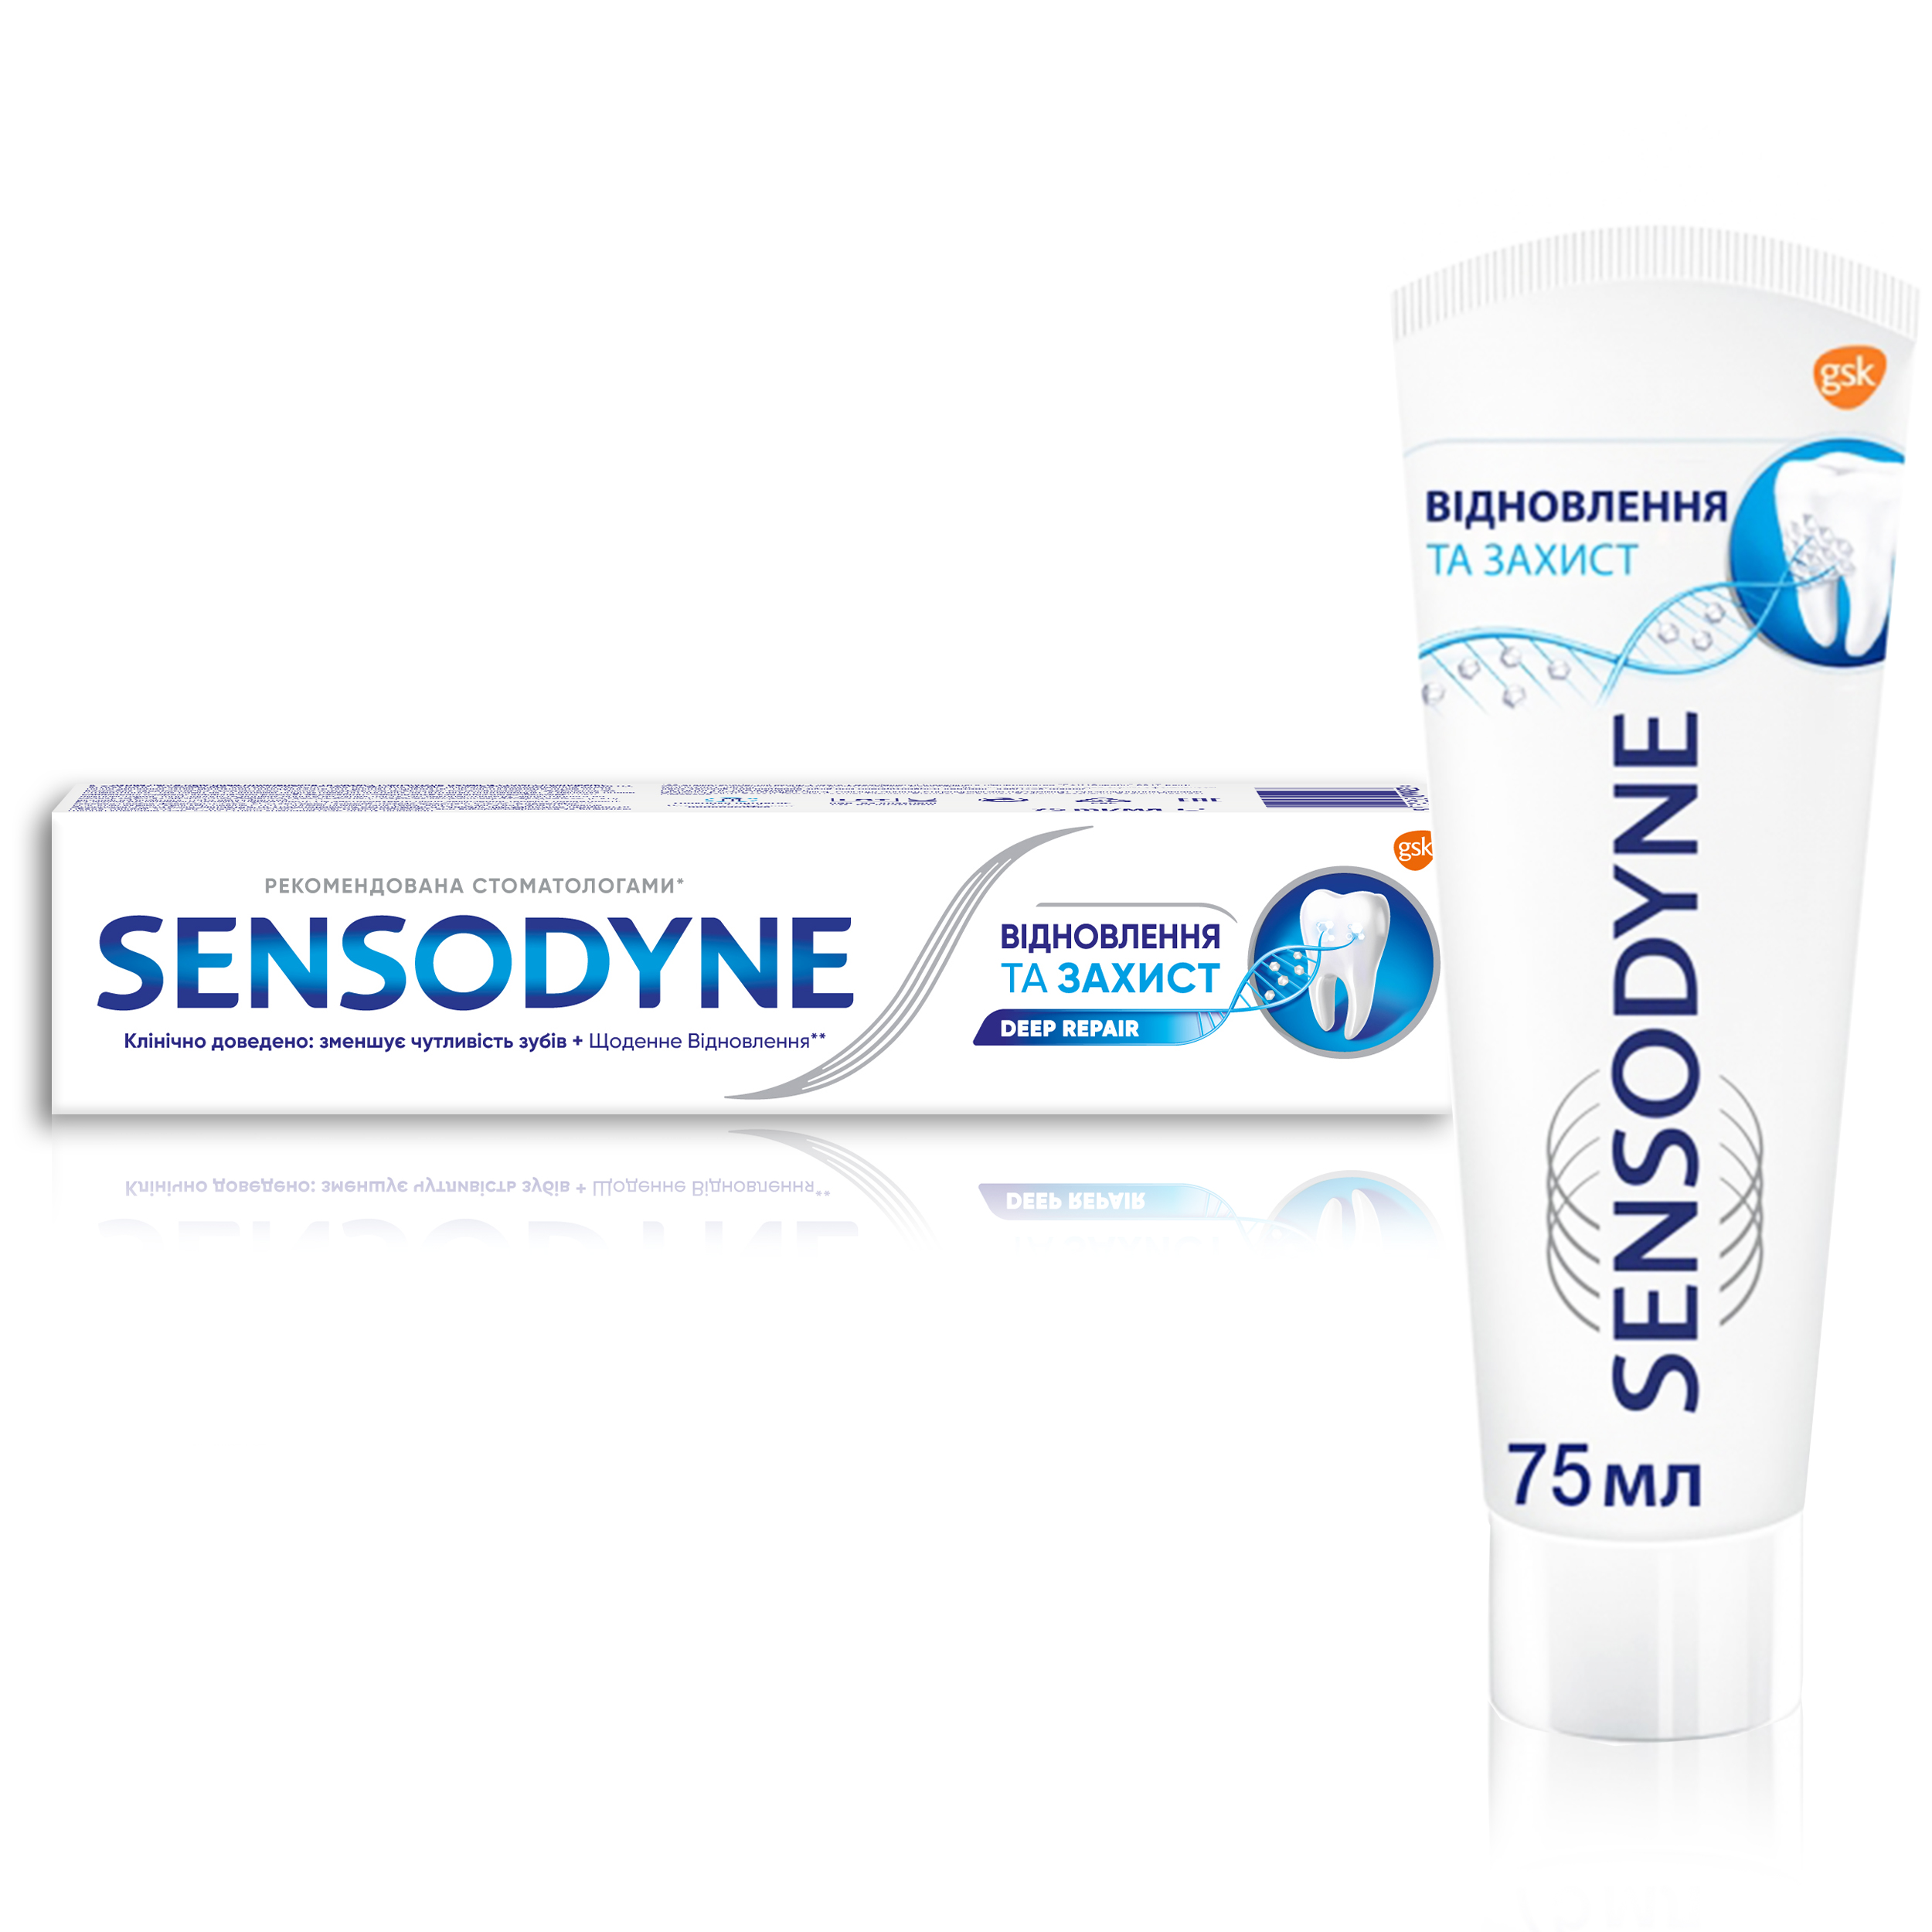 Зубная паста Sensodyne Восстановление и Защита, 75 мл - фото 5